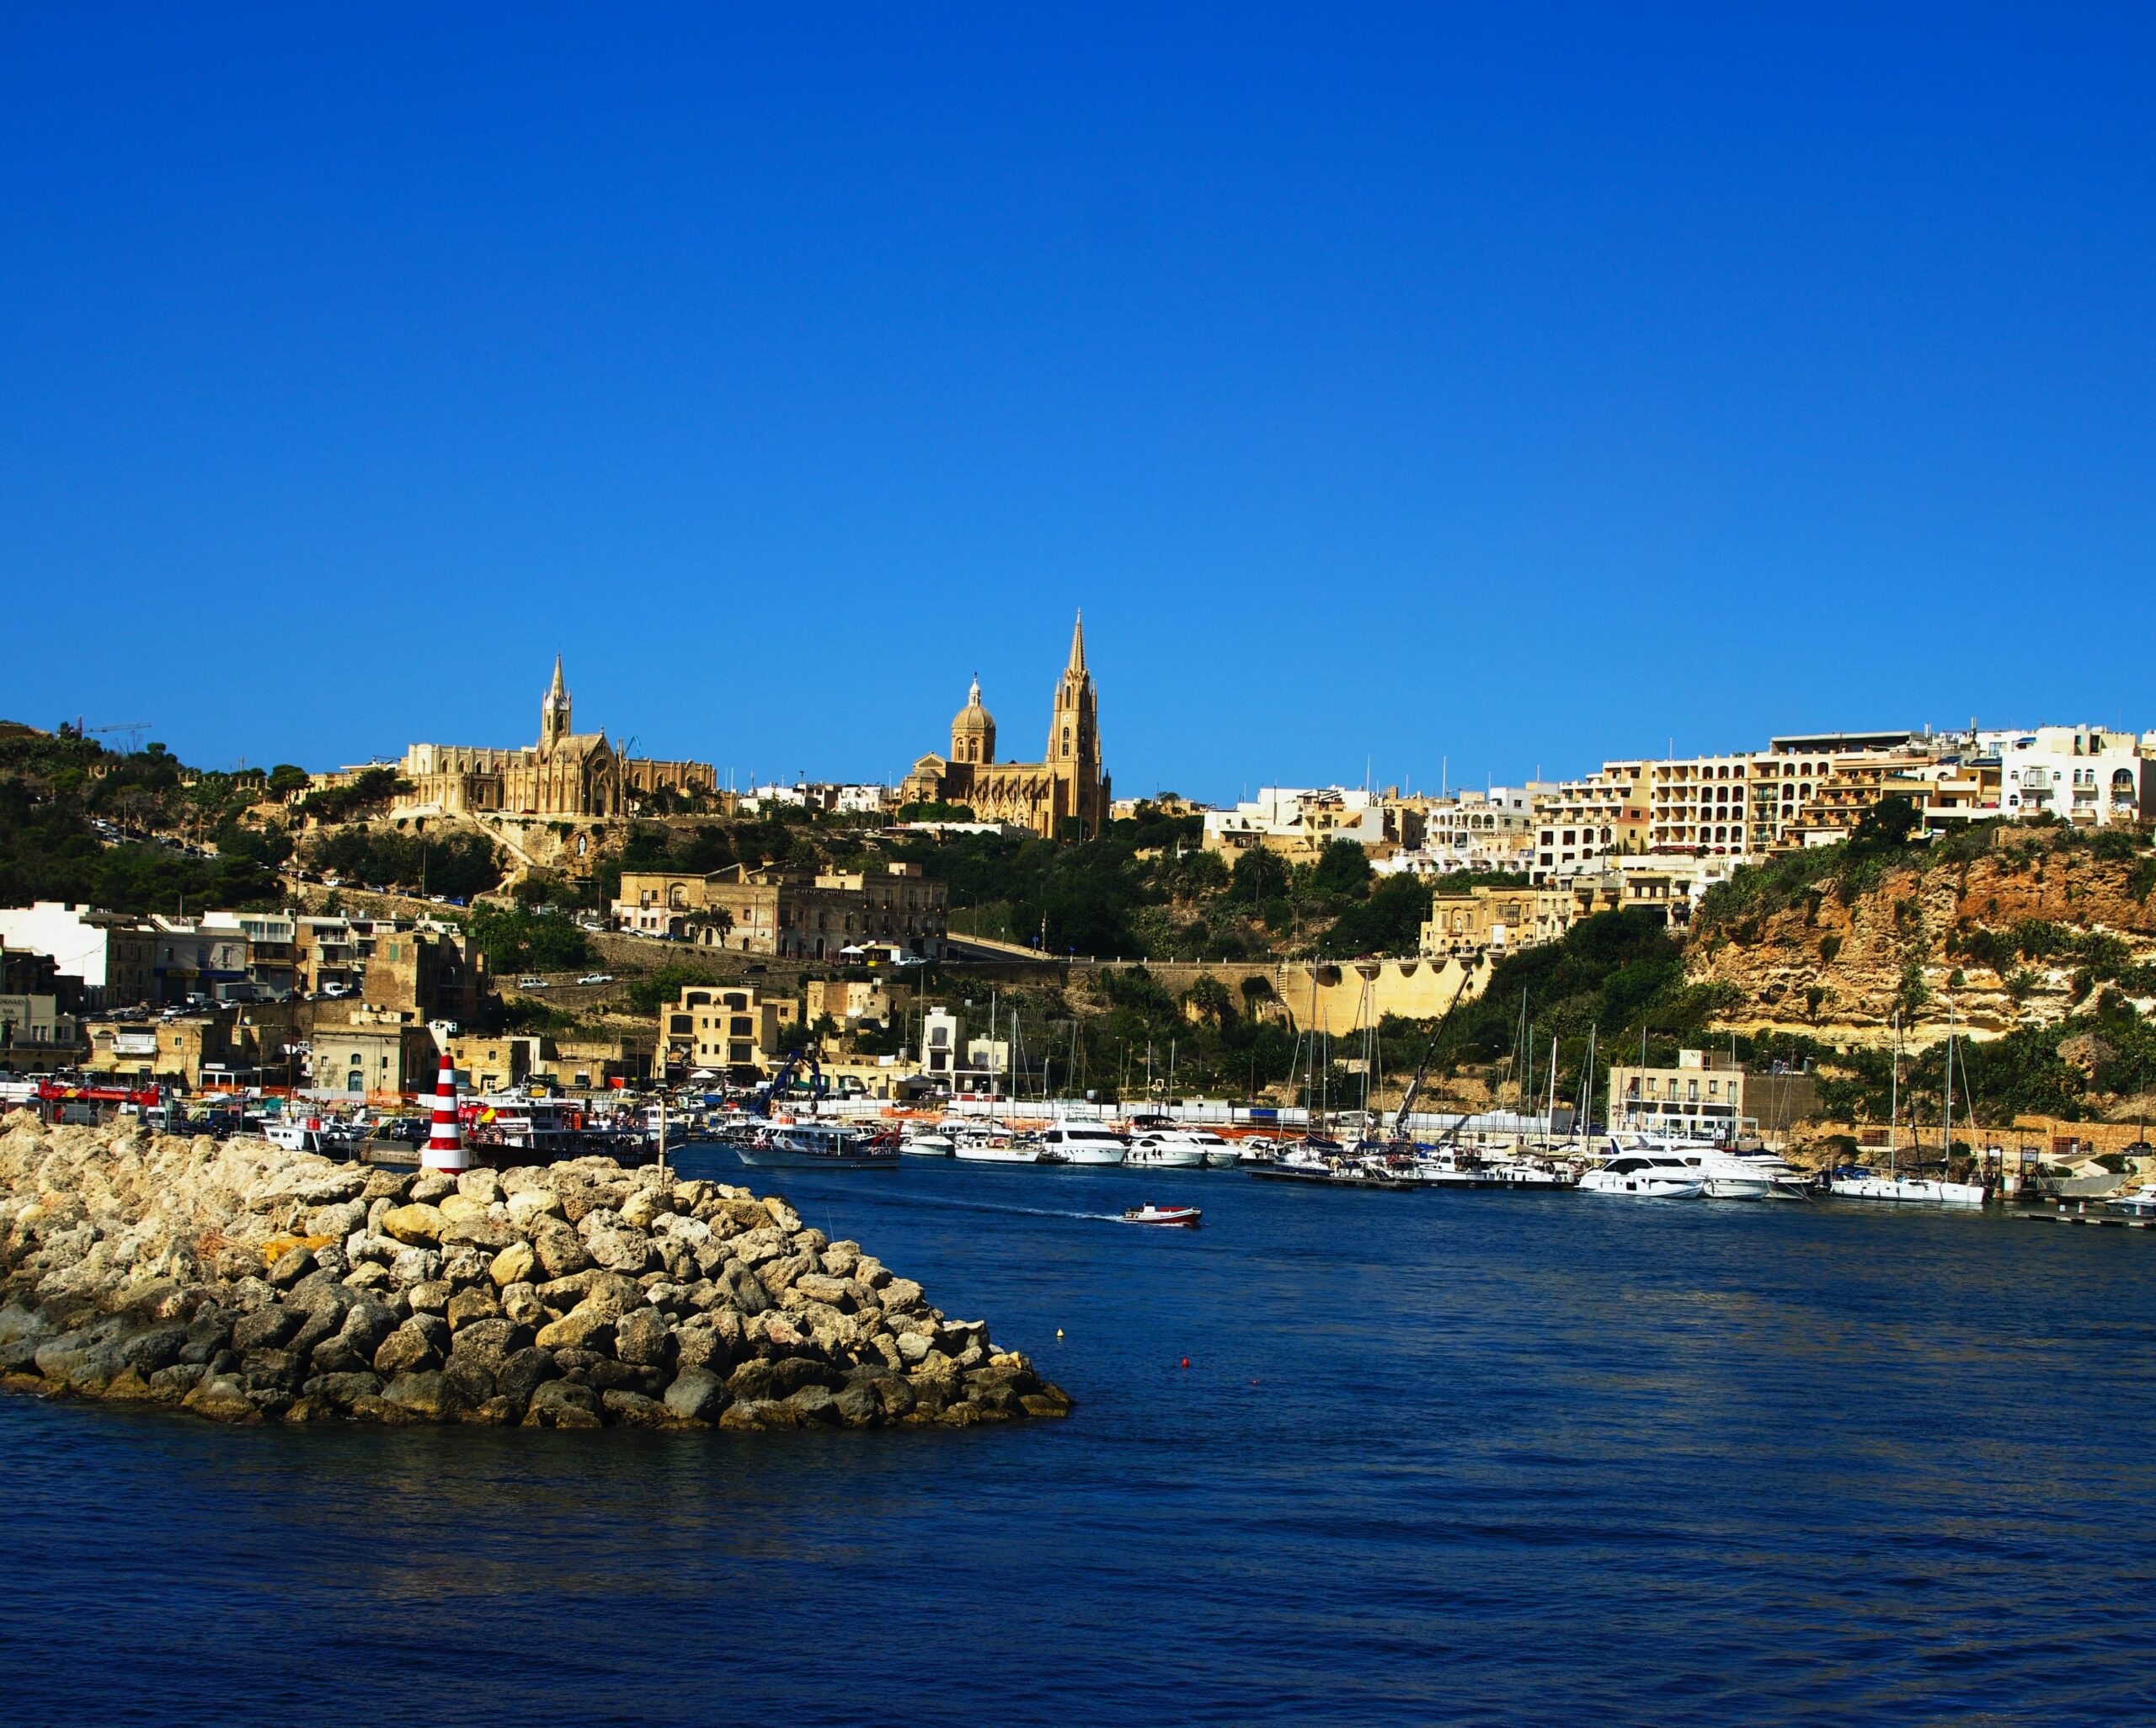 Ferry terminal of Gozo, Malta